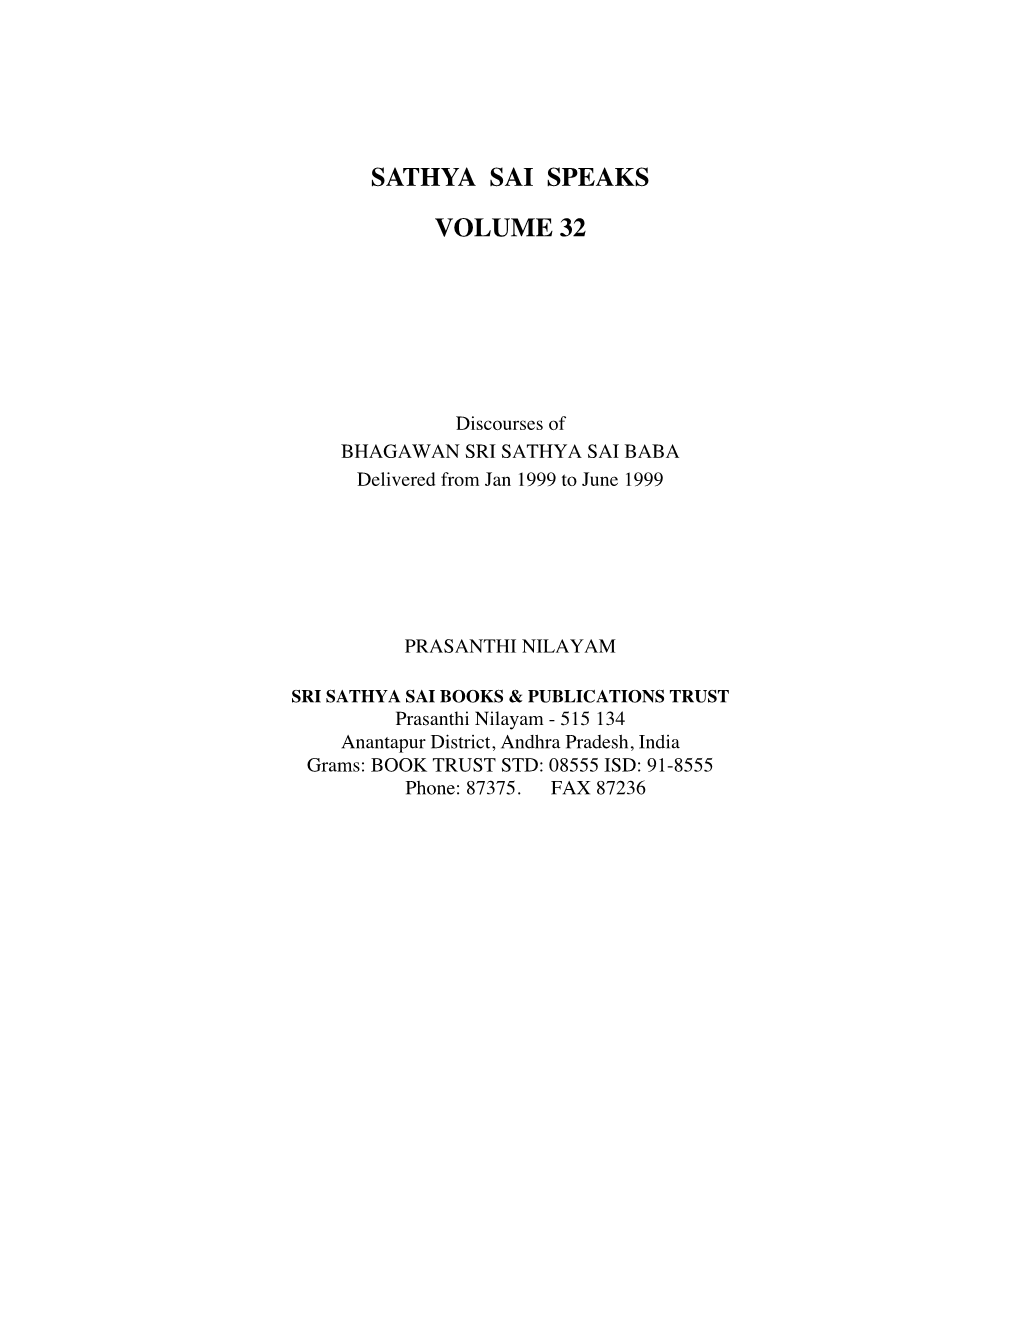 Sathya Sai Speaks Volume 32